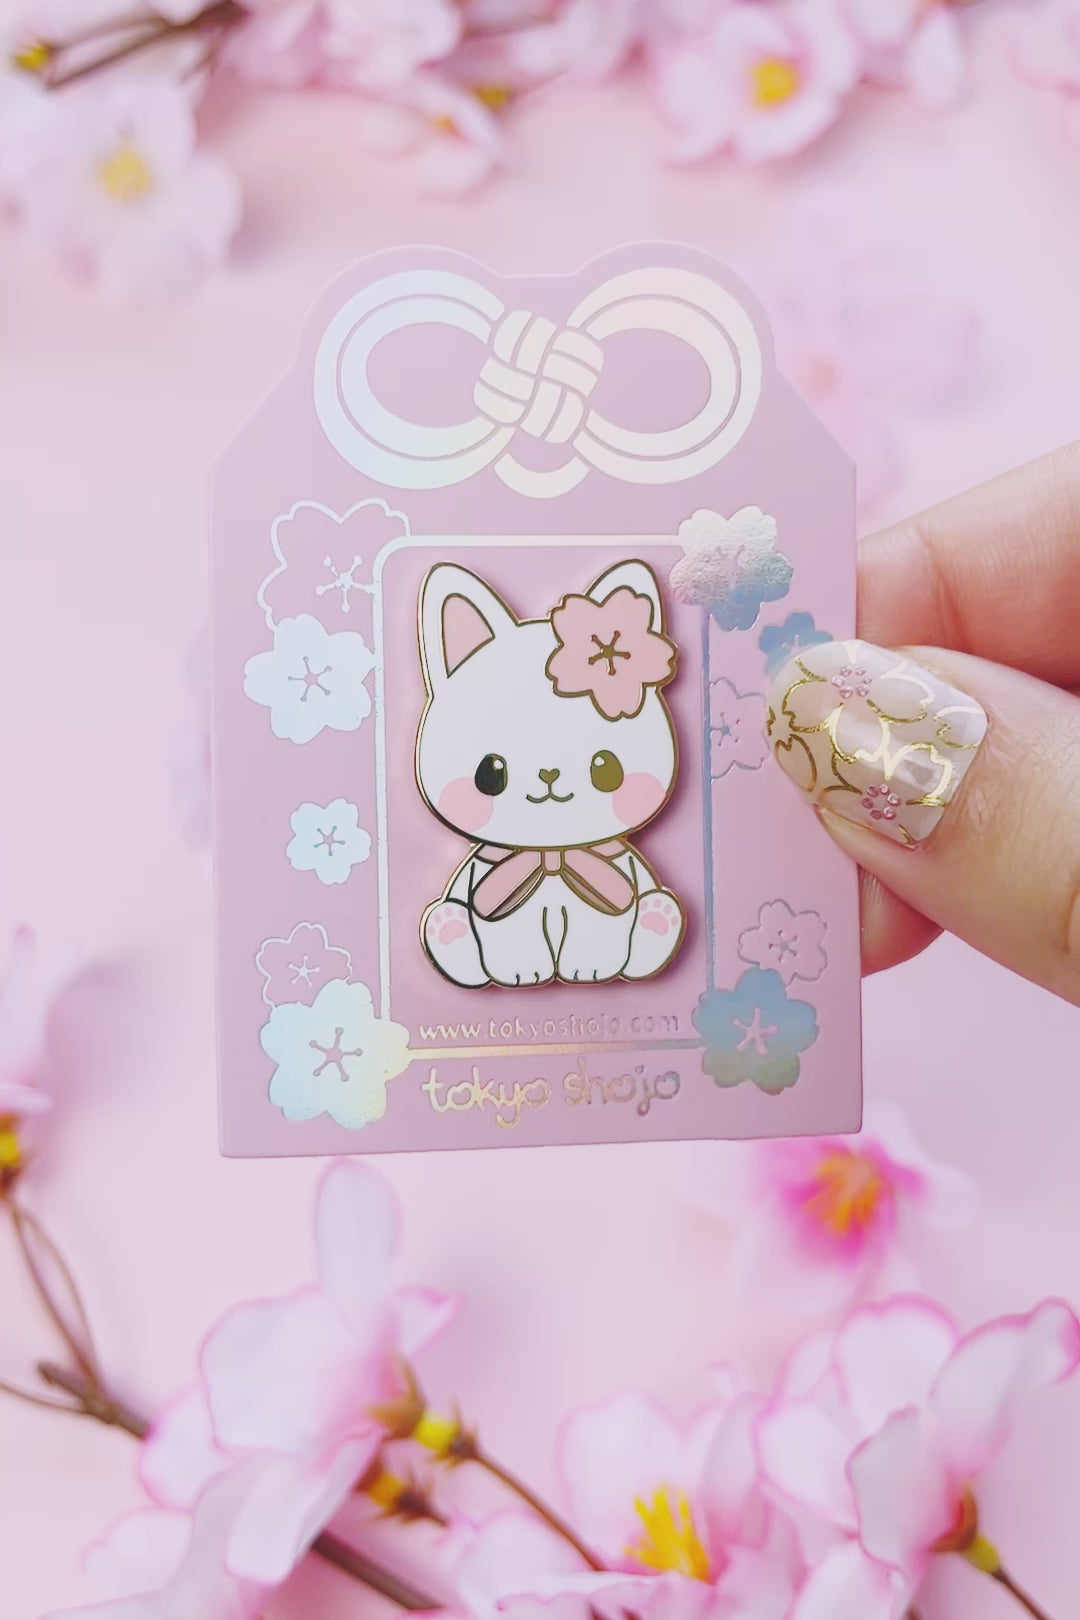 [Tokyo Shojo] Hanami the Cat Pin